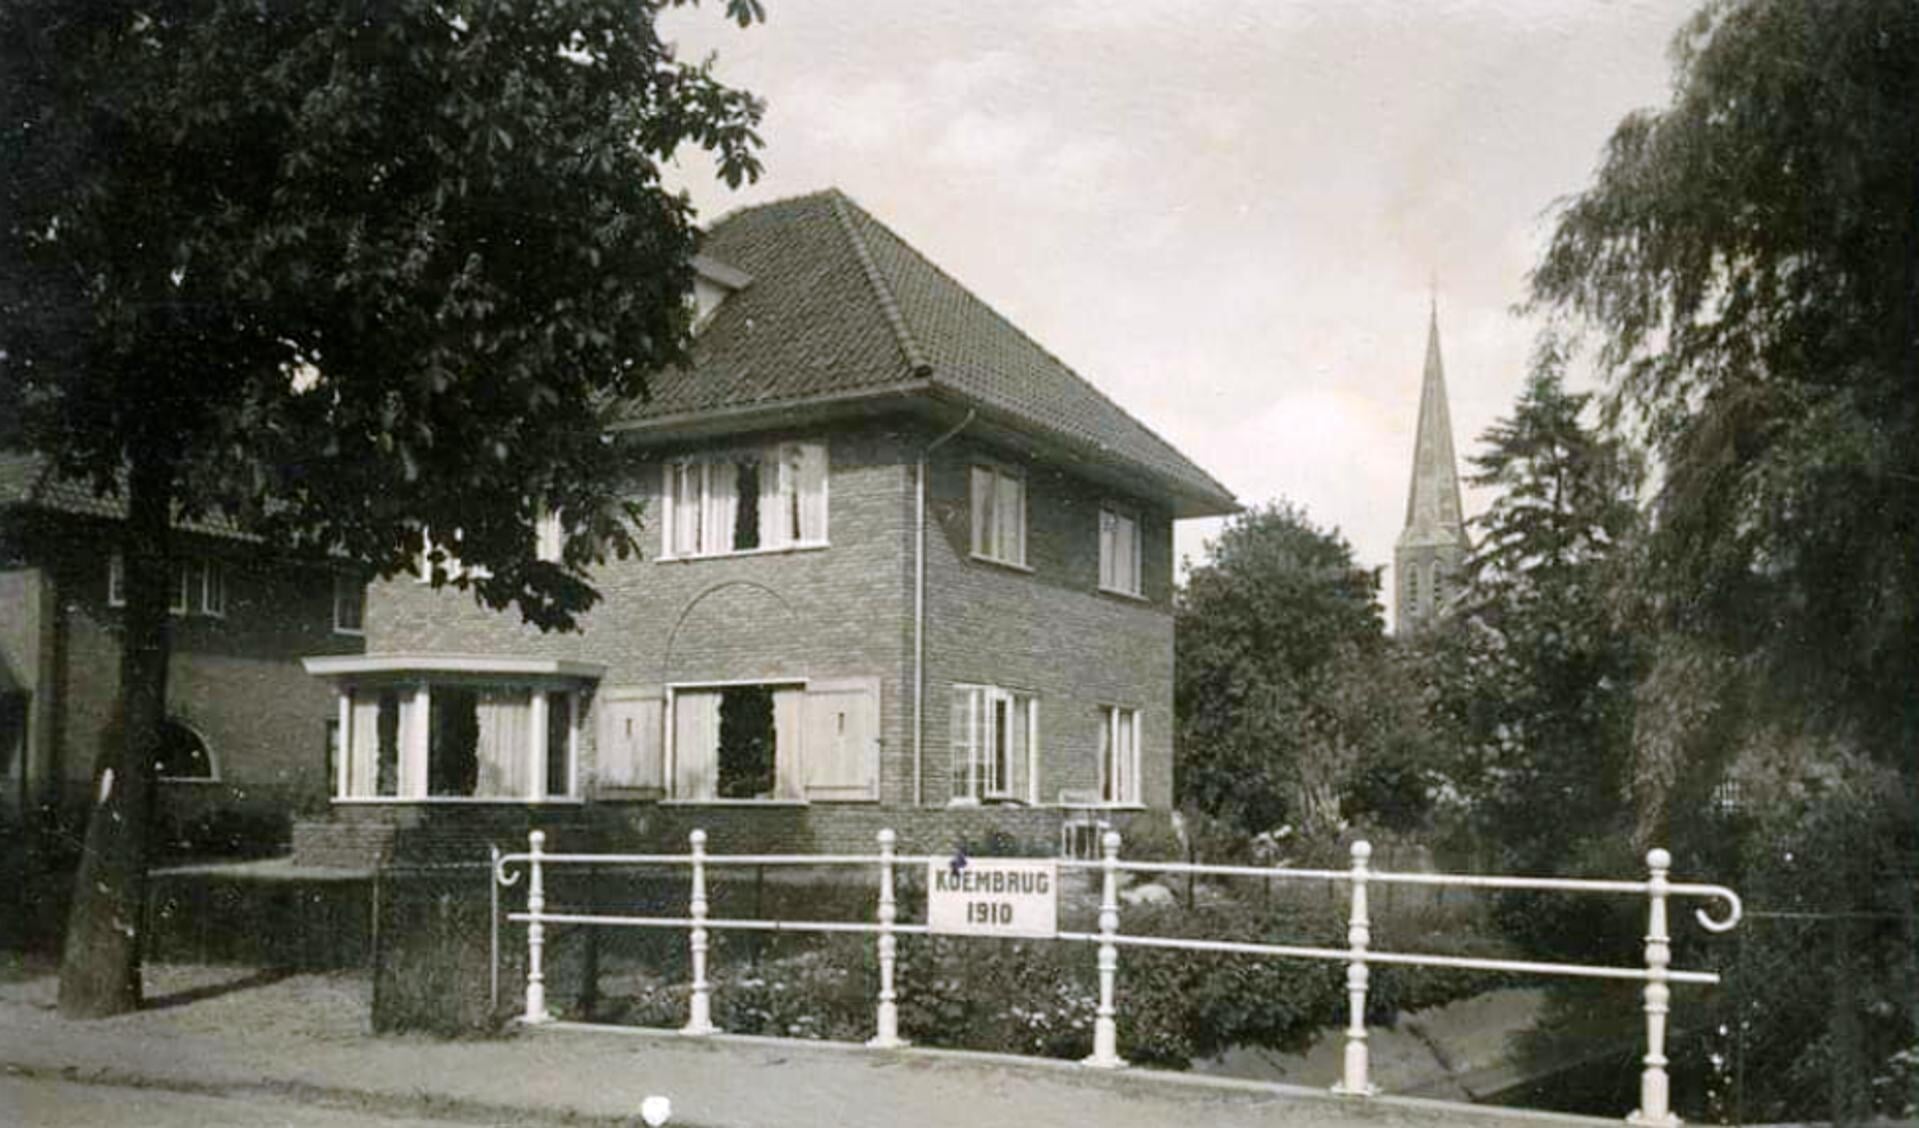 Aalten de Koembrug circa 1930. Foto: collectie Leo van der Linde